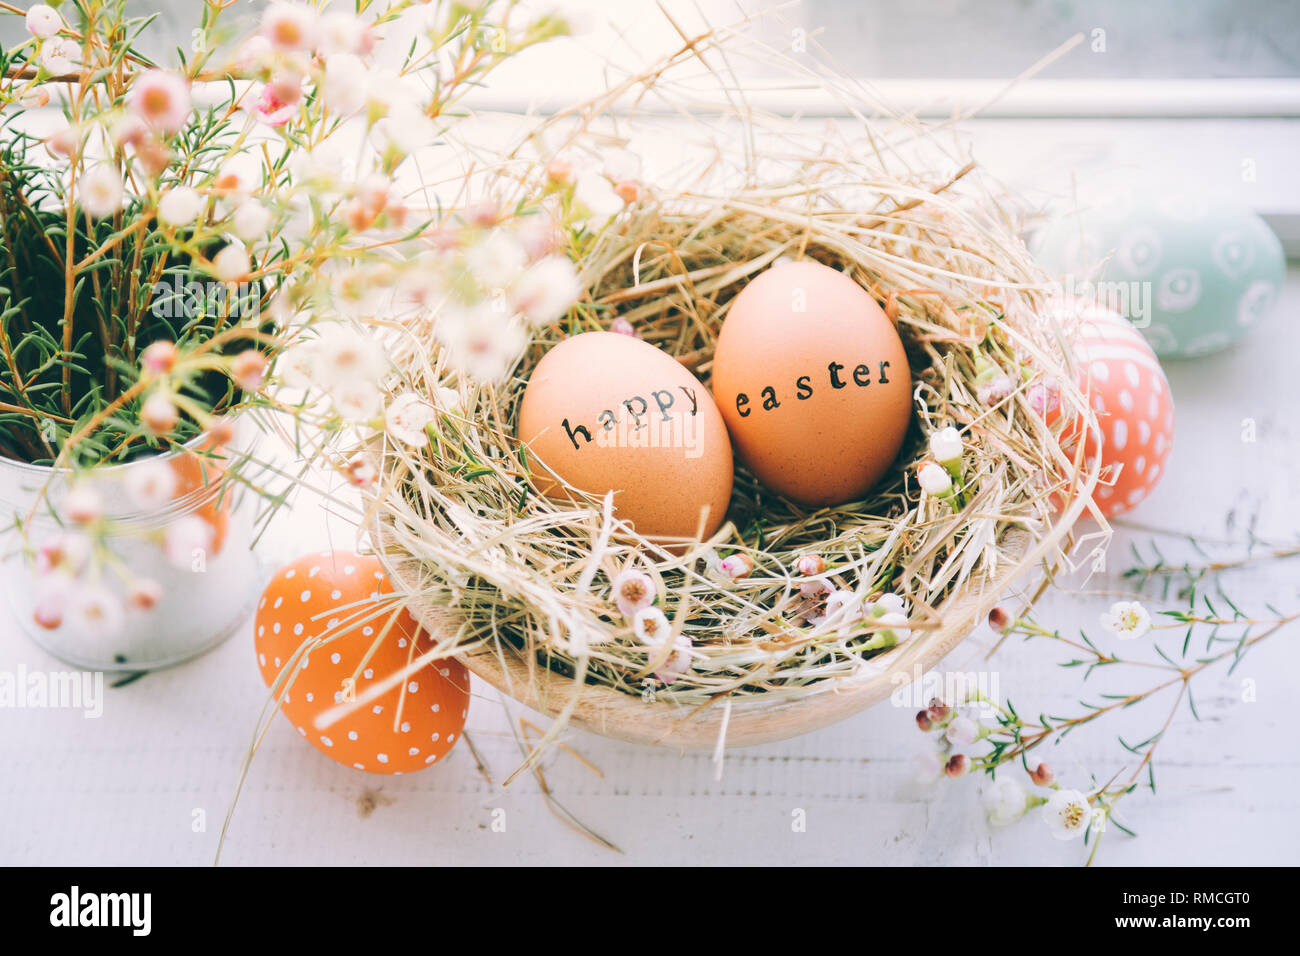 Les œufs de pâques avec tampon de caoutchouc Joyeuses Pâques texte d'accueil dans un nid de foin et de fleurs à côté d'une fenêtre à la maison Banque D'Images